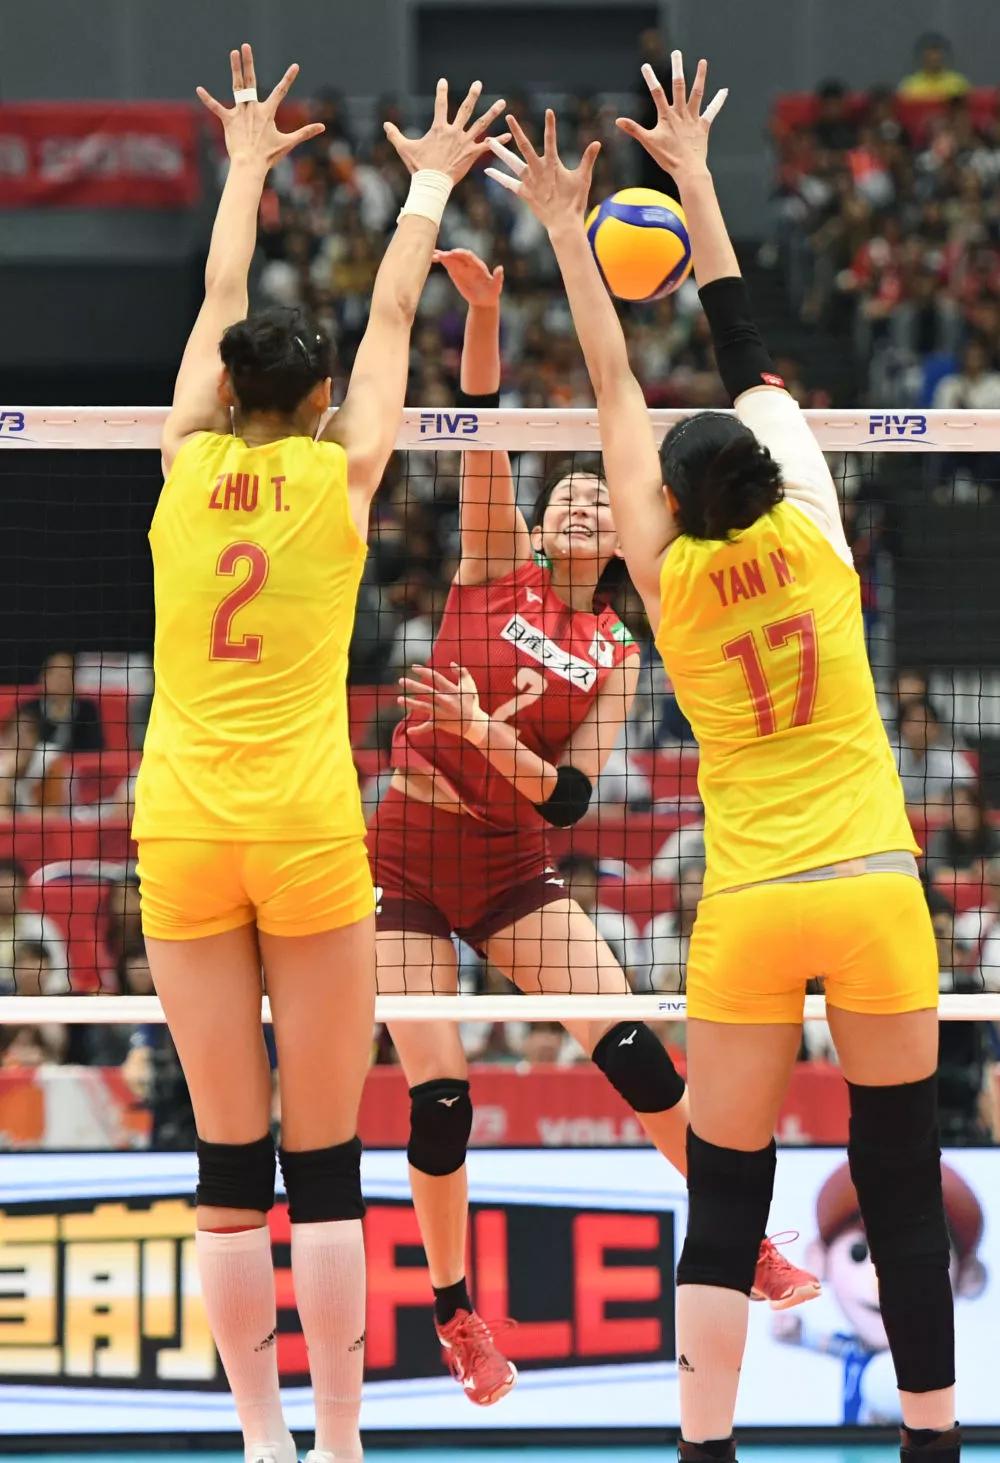 9月19日,中国队球员朱婷(左)和闫妮(右)在比赛中拦网.